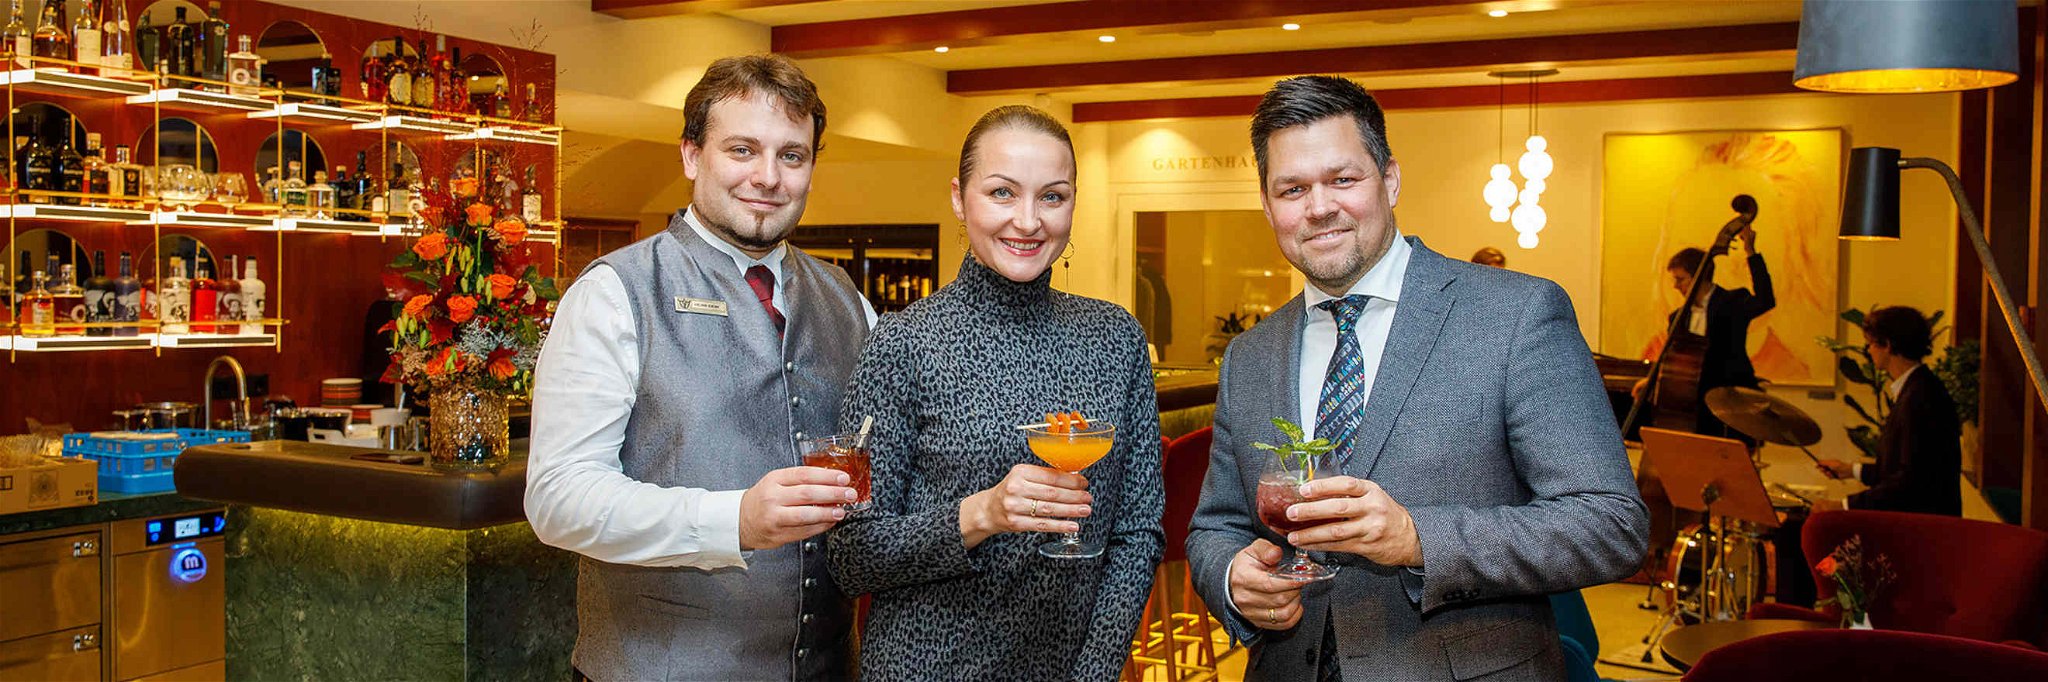 Barchef Denin Obid und Gastgeber Liliya sowie Philipp Florian.